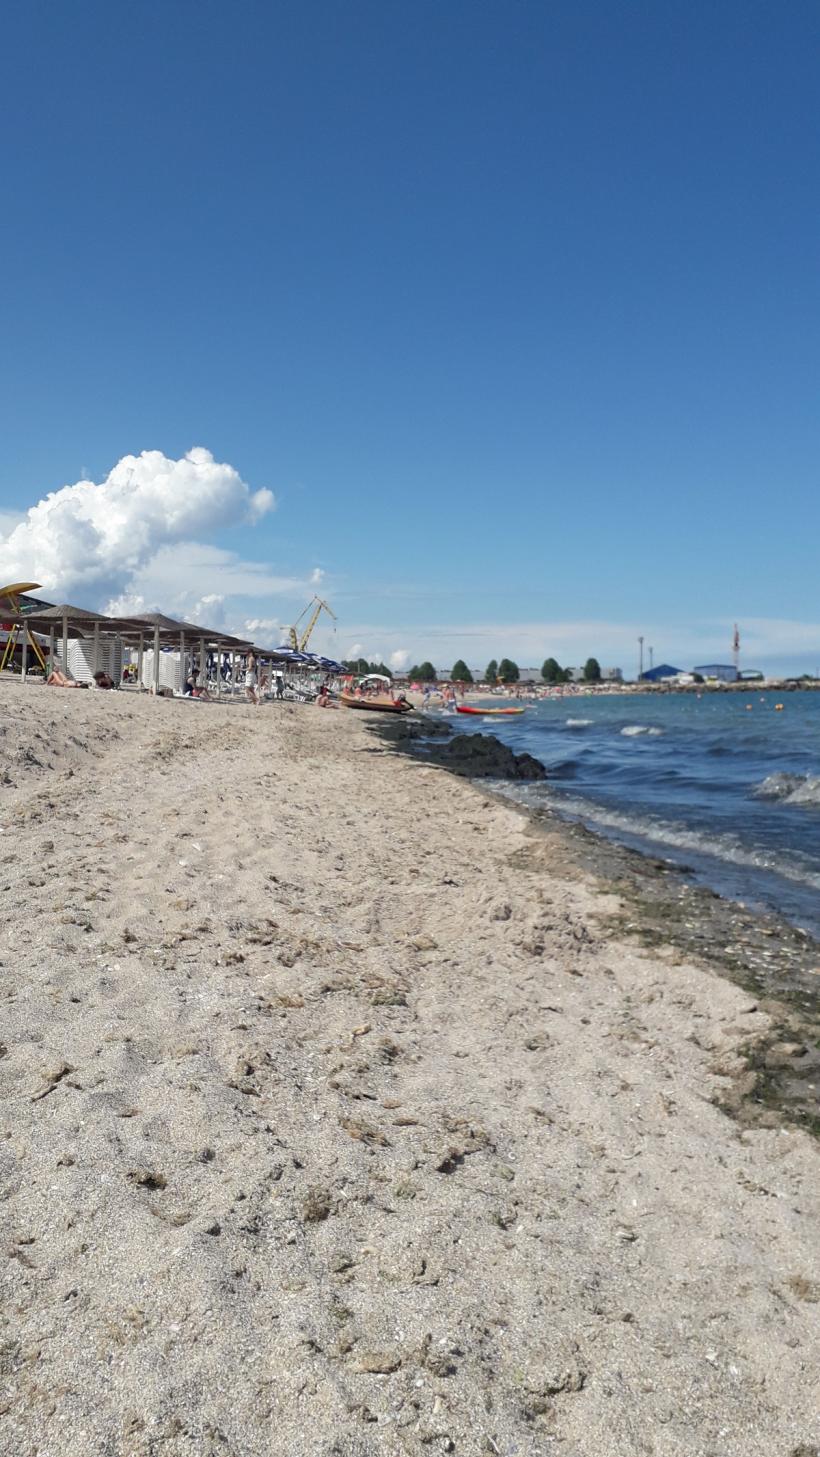 Circa 85% dintre deșeurile aruncate de turiști pe litoral sunt din plastic